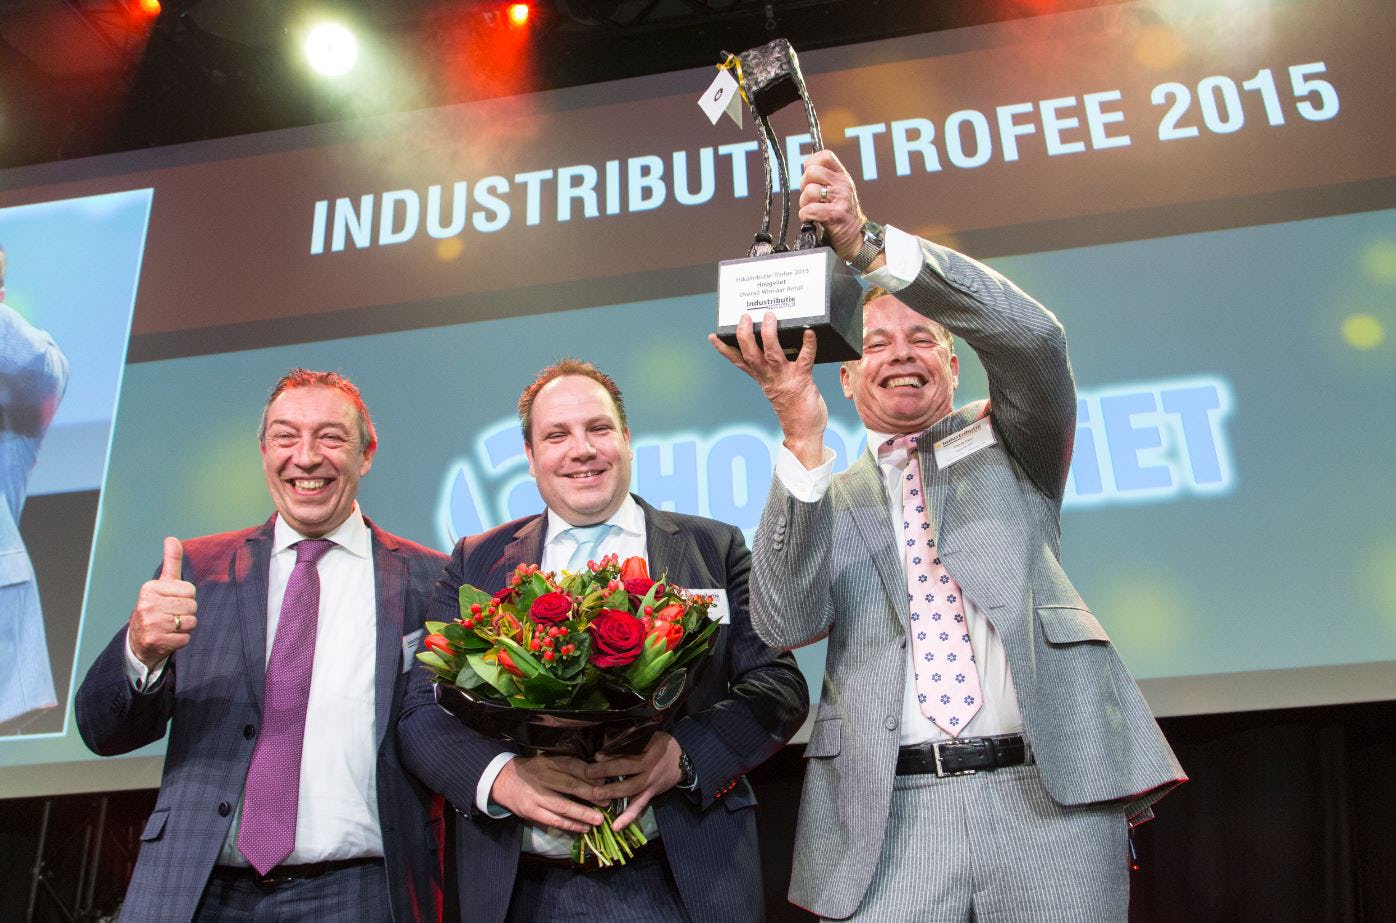 Industributie: DGS, Coca-Cola en Hoogvliet winnen